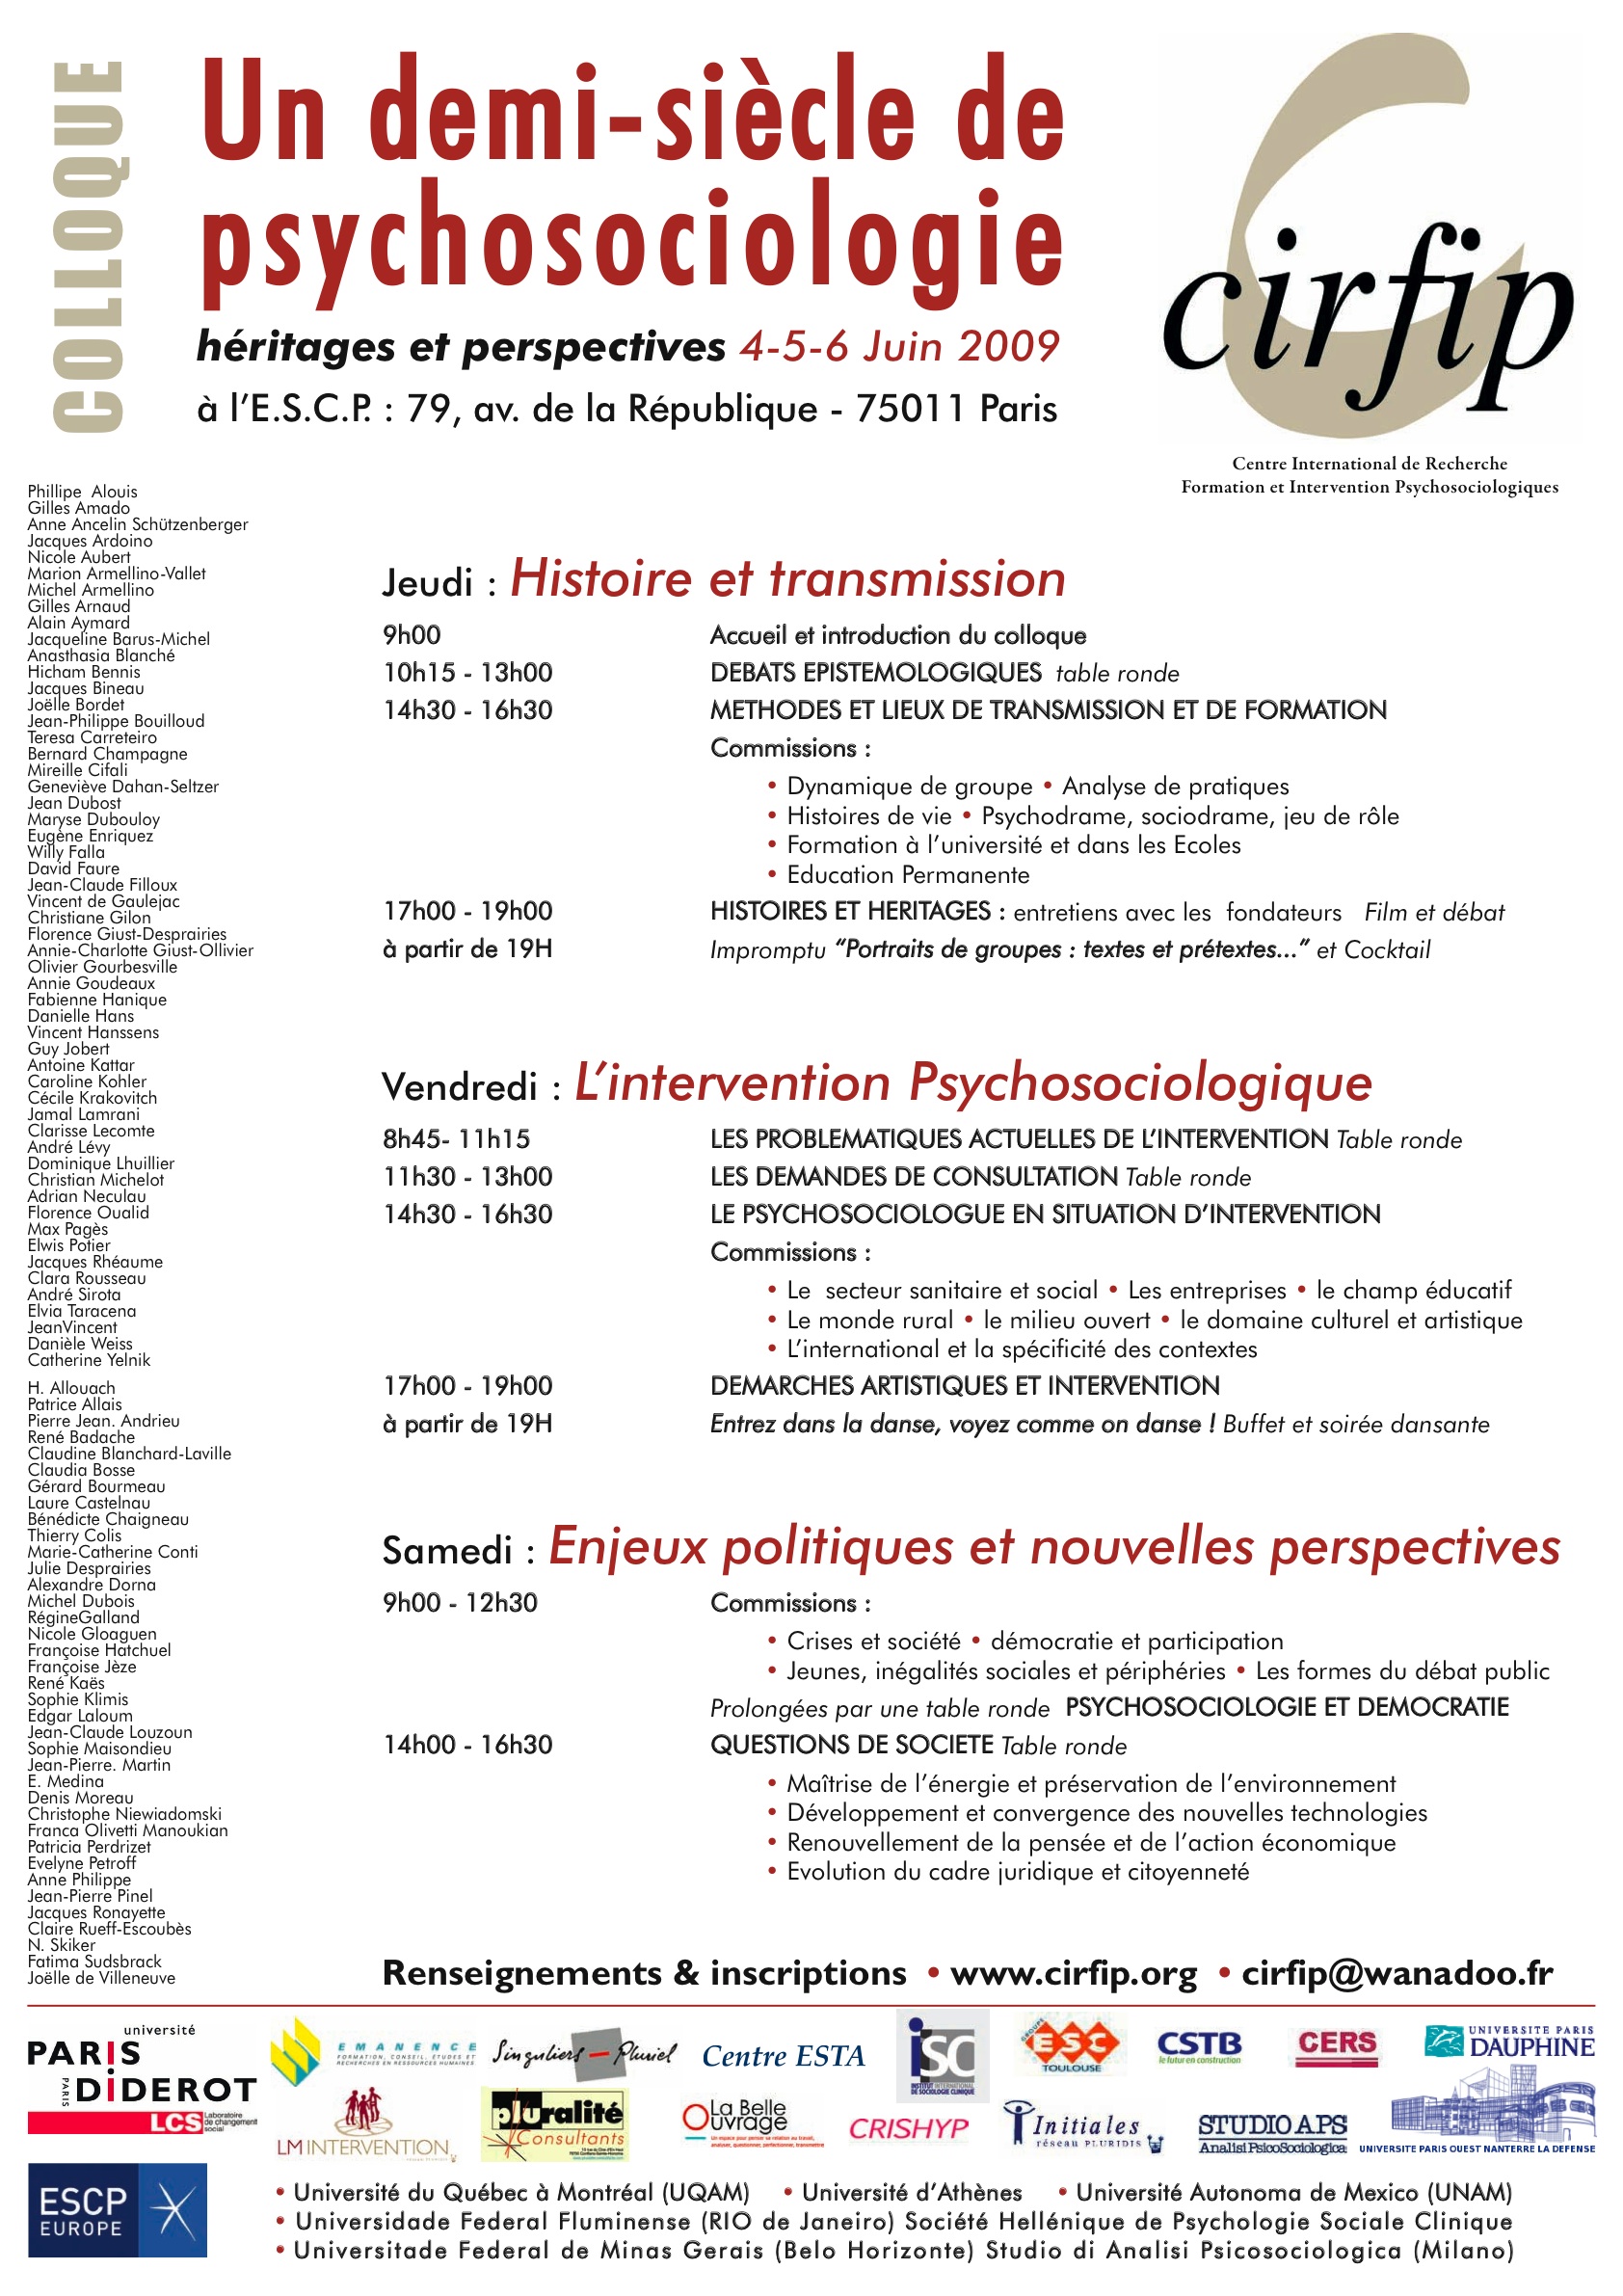 Affiche du Colloque "Un demi-siècle de Psychosociologie : Héritages et Perspectives"